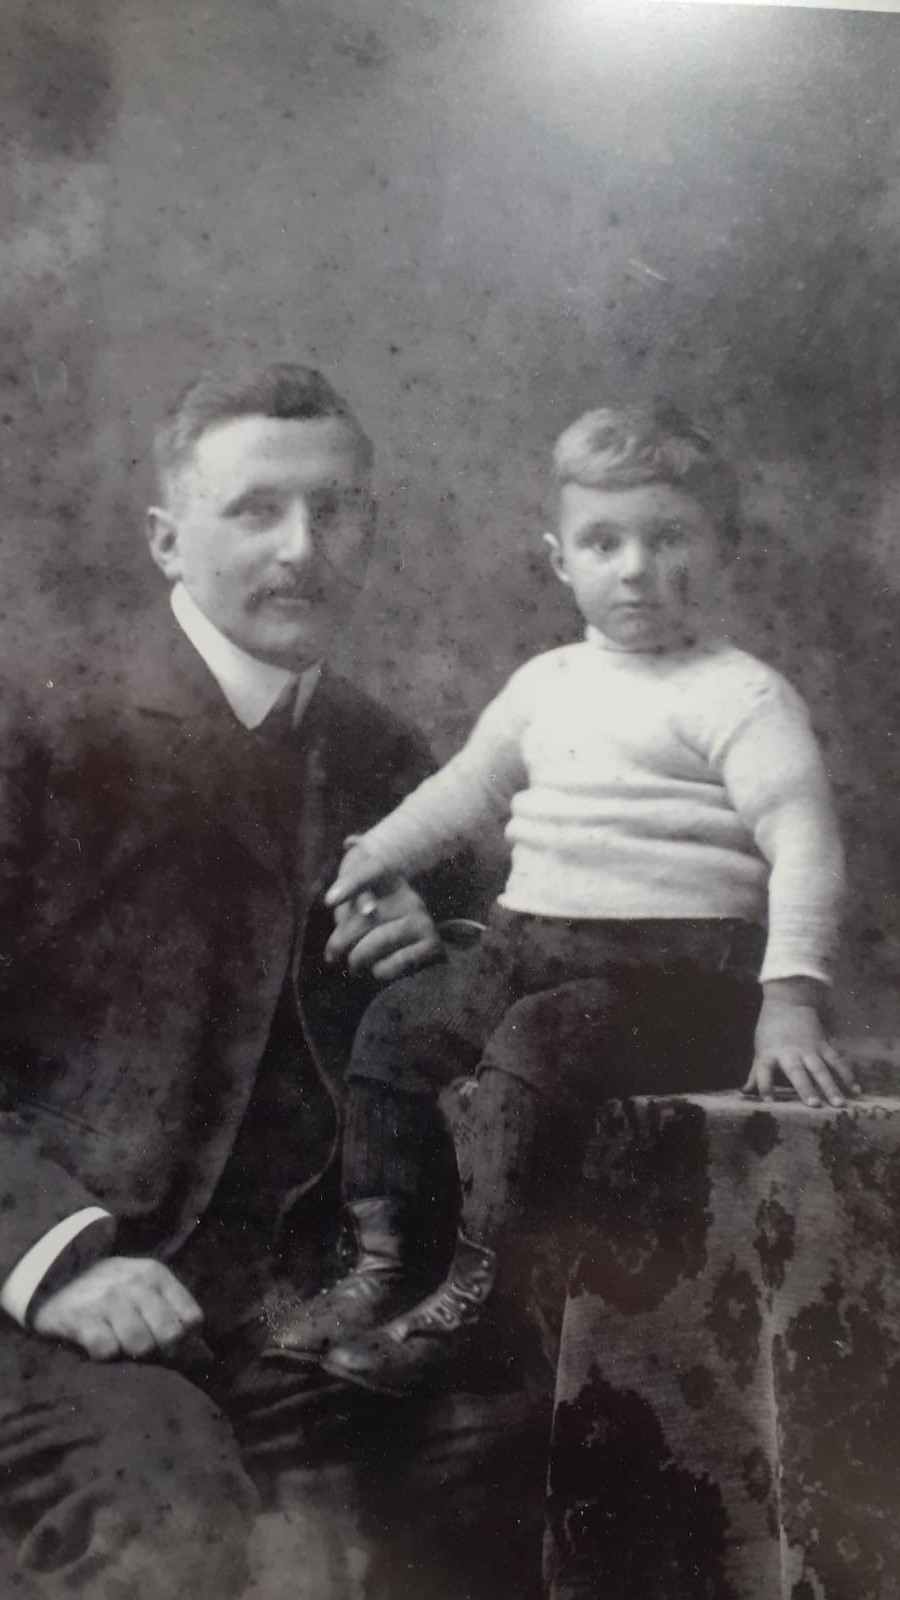 Jelle met zijn zoontje <A HREF="https://koenvansantvoord.nl/kwartierstaat/index.php?kwst=bothboomsma&num=12&gen=1#nr12"><U><B>Johan</B></U></A>, hier ongeveer net zou oud als toen zijn vader wees werd (ca. 1909)